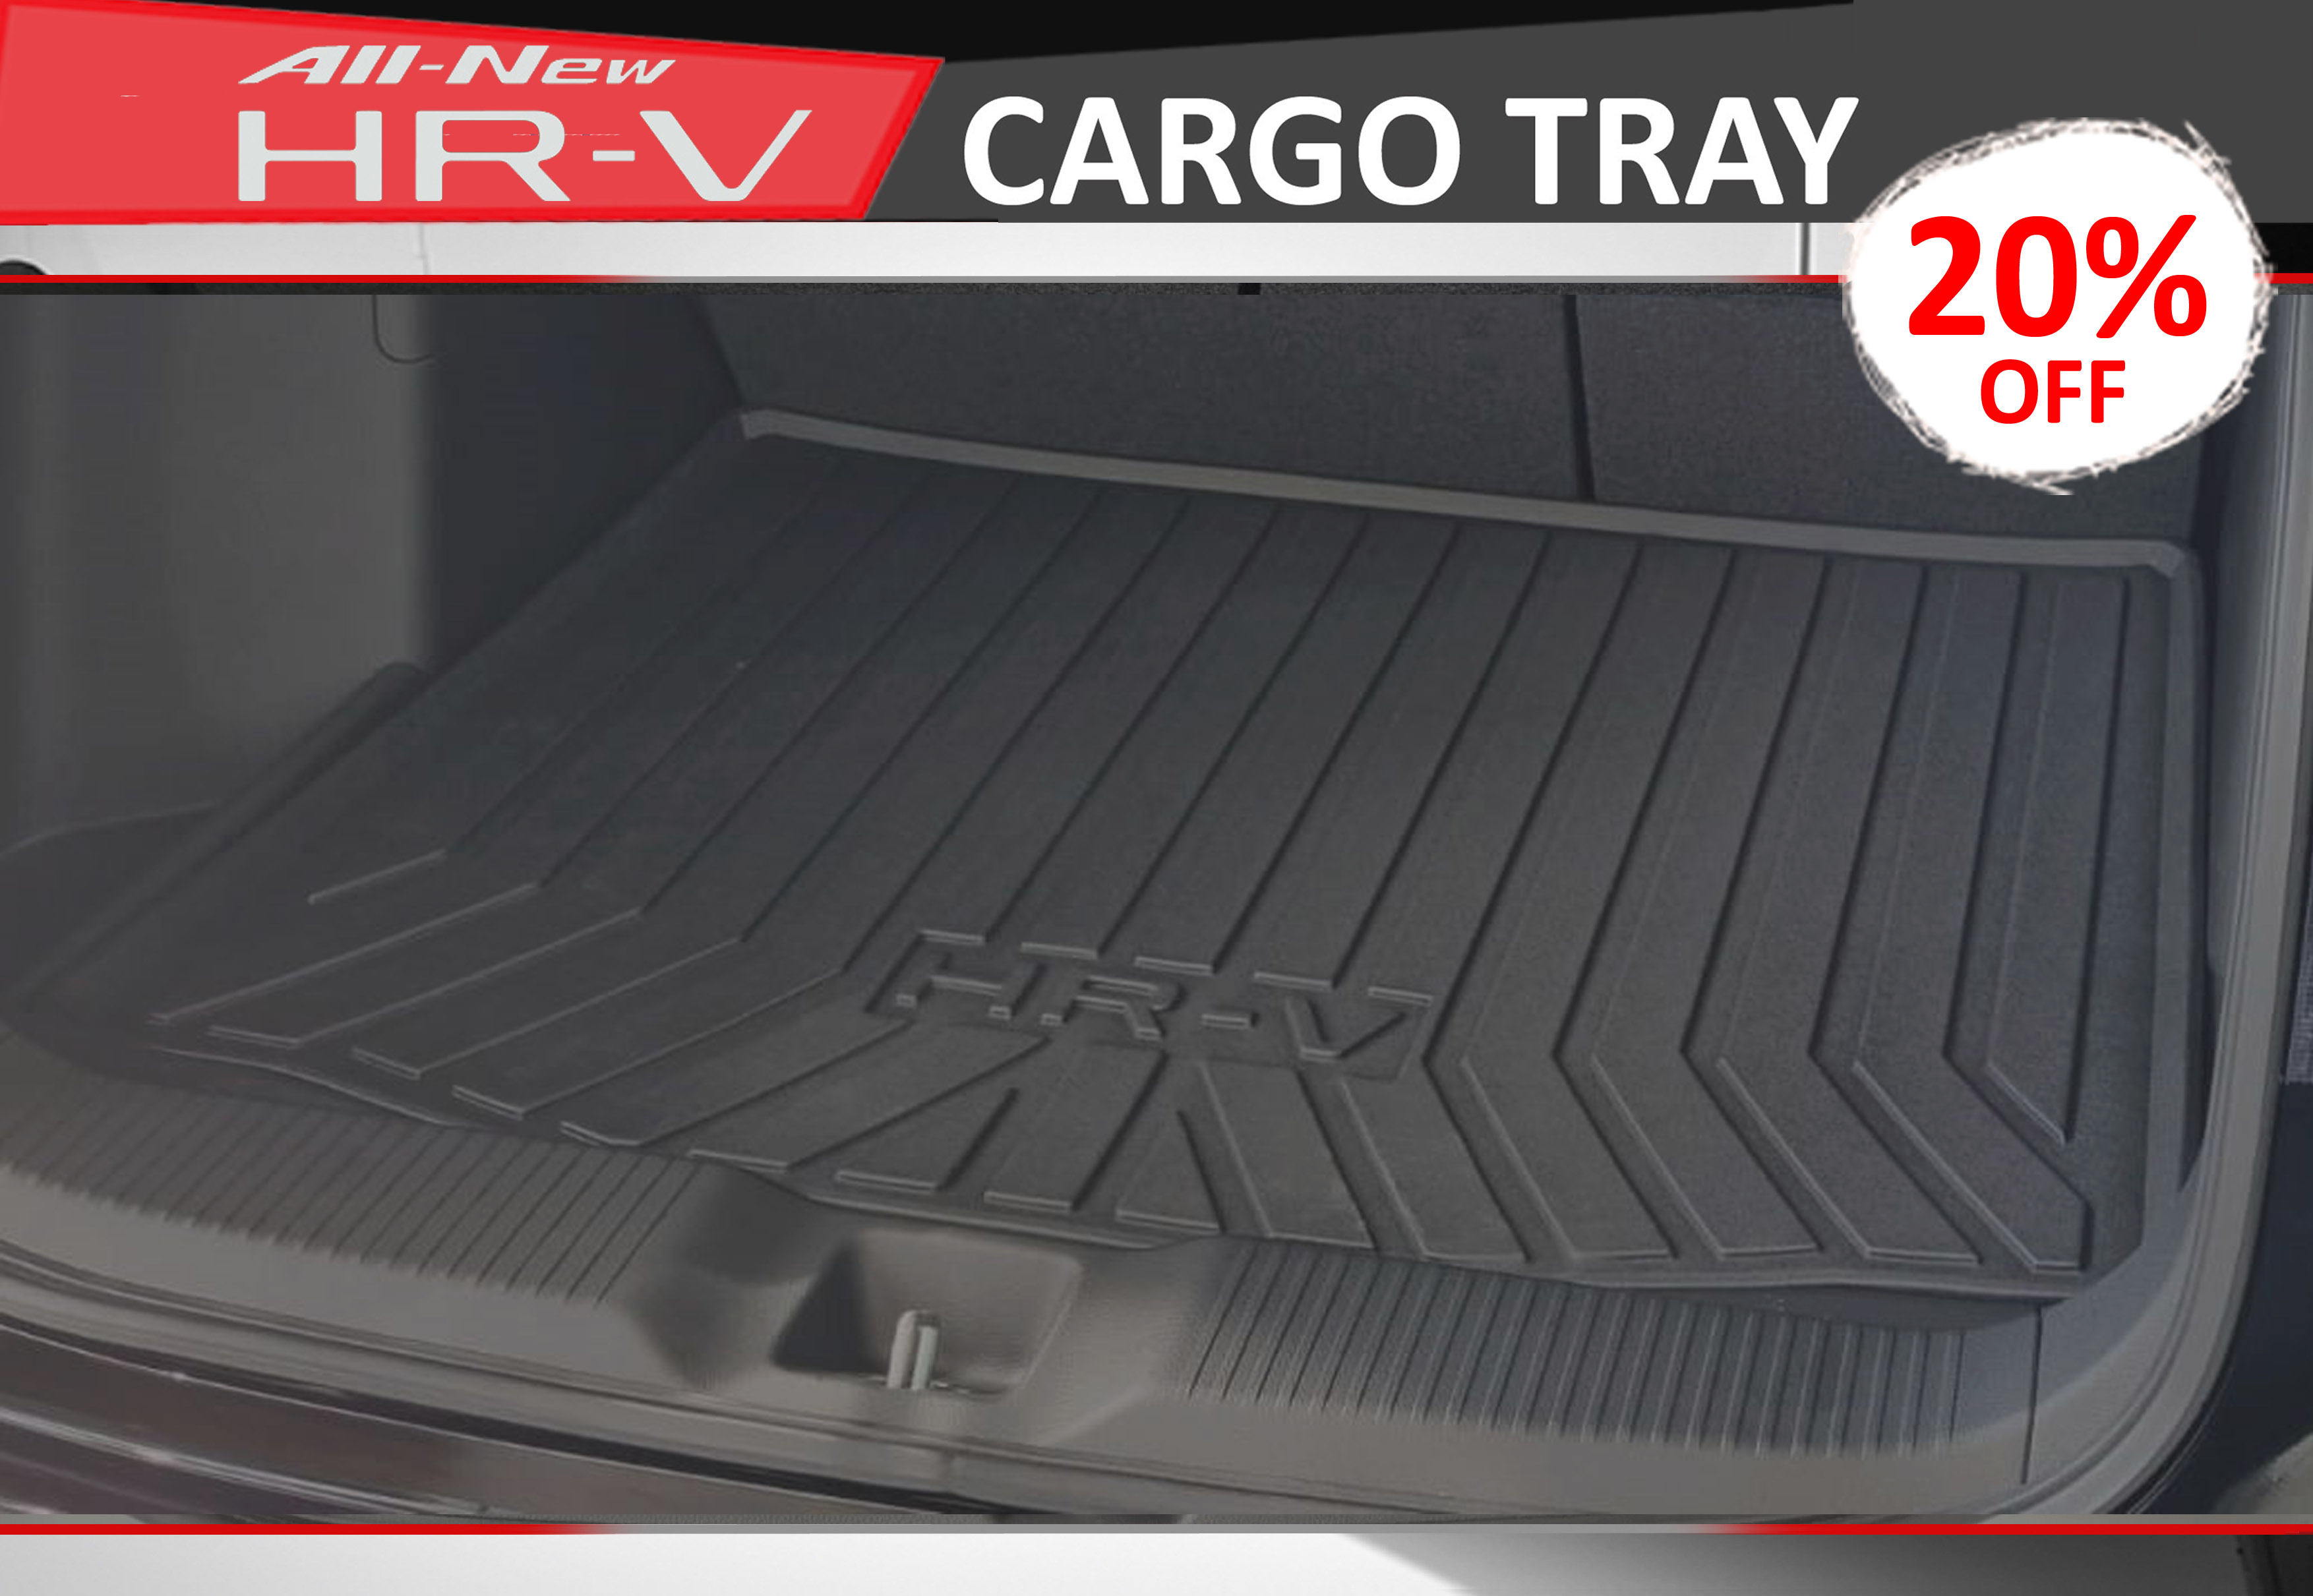 HR-V_Cargo_Tray Honda - Kah Motor - Rent a Honda this Hari Raya Haji with min.4 days and enjoy 20% off!